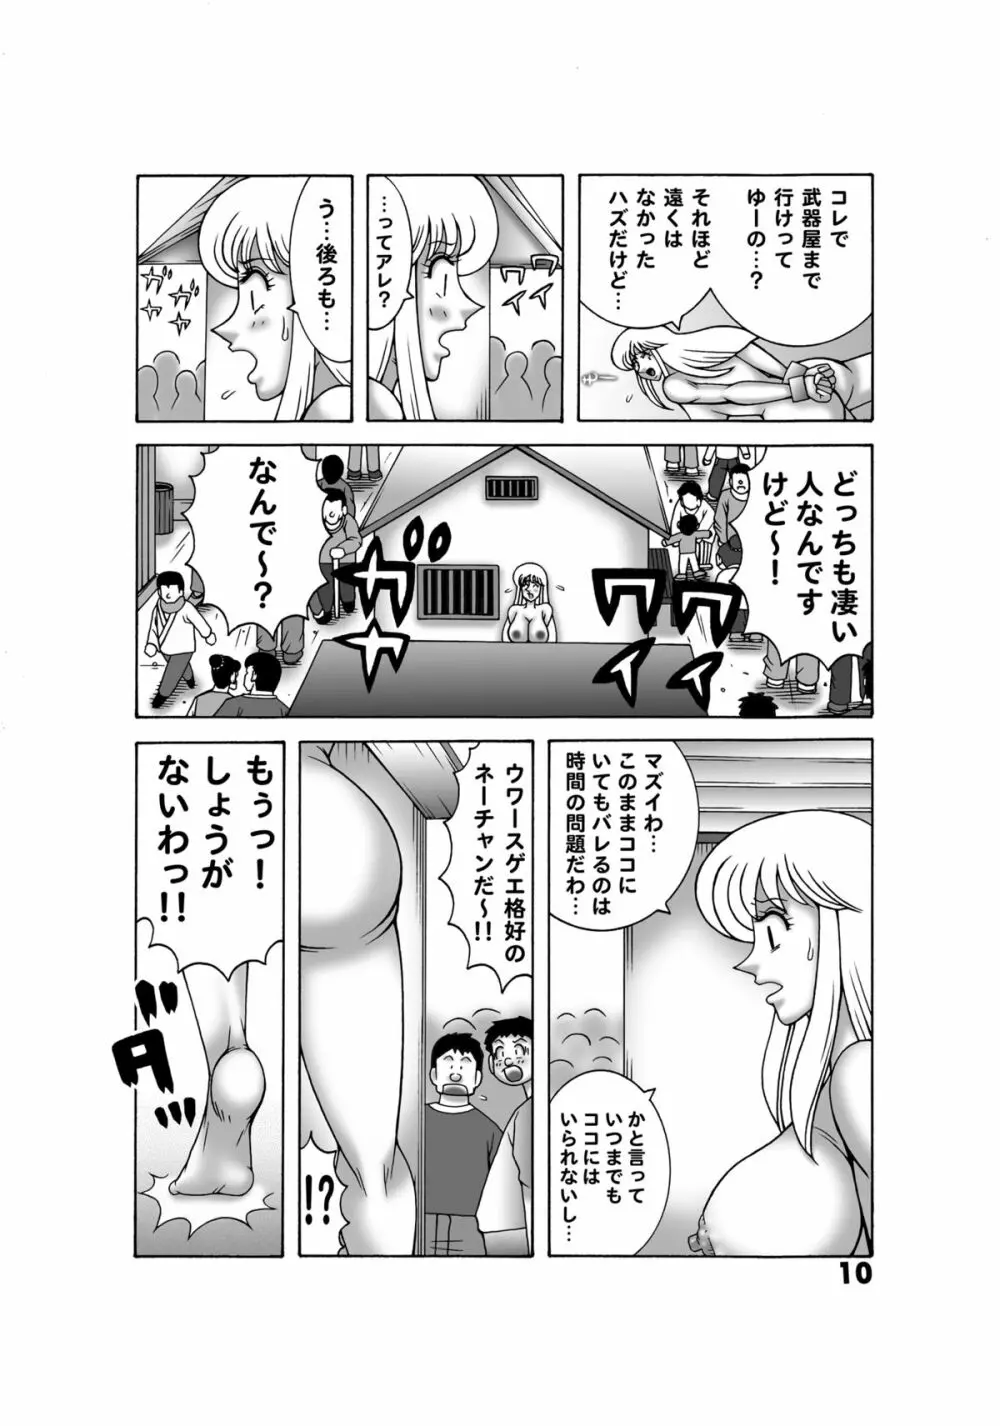 こち亀ダイナマイト 14 - page8